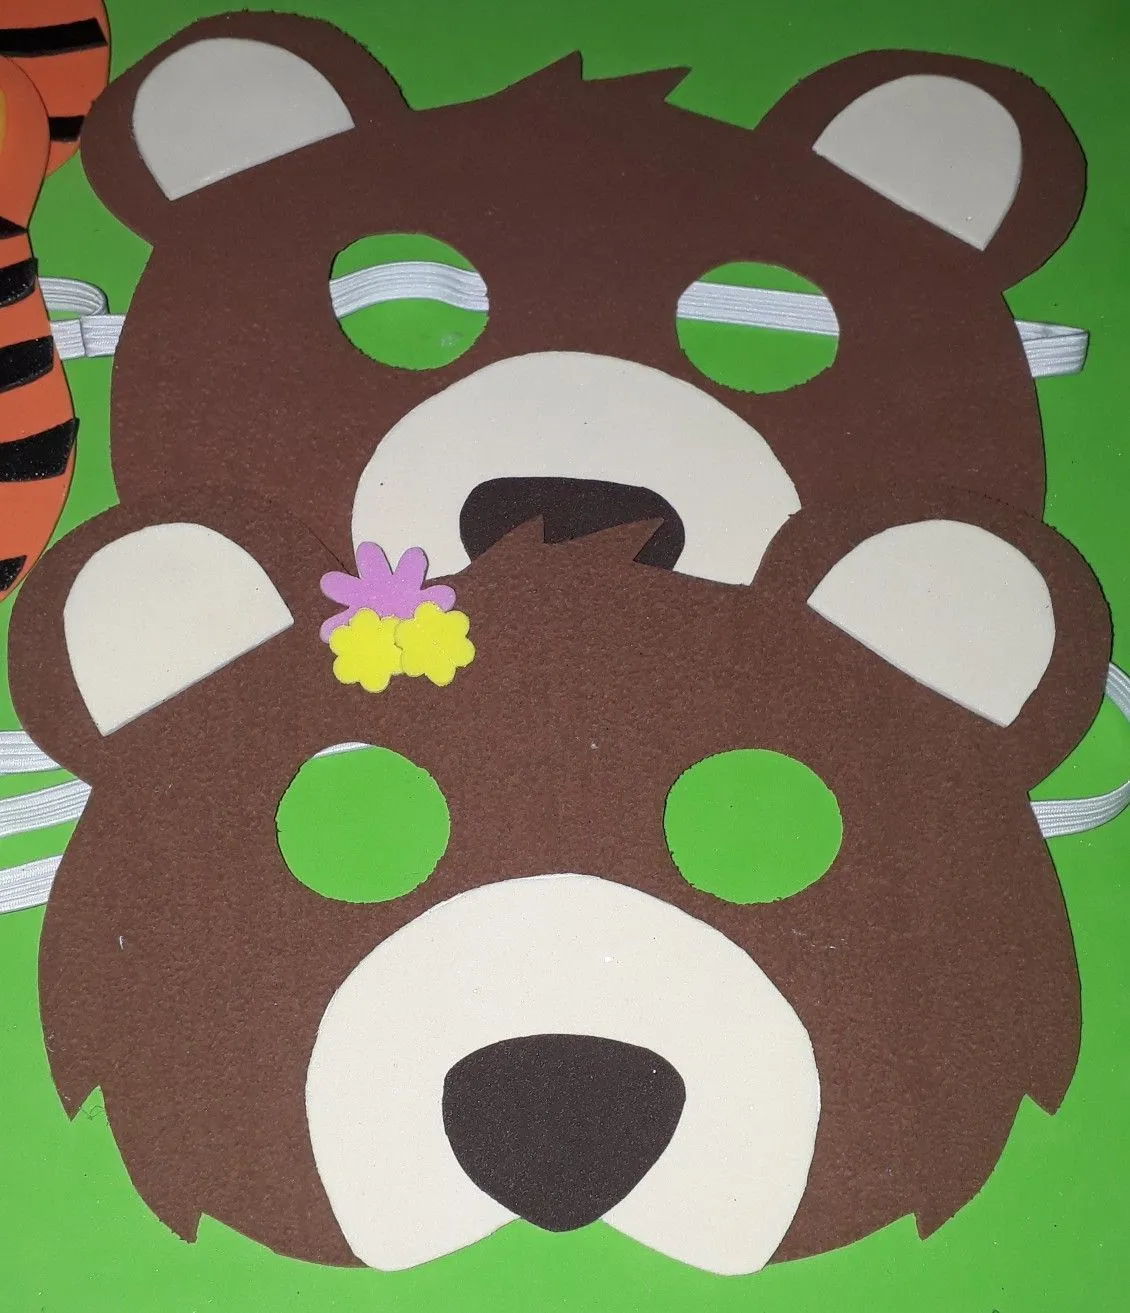 Mascara de oso | Mascara de oso, Manualidades, Manualidades divertidas